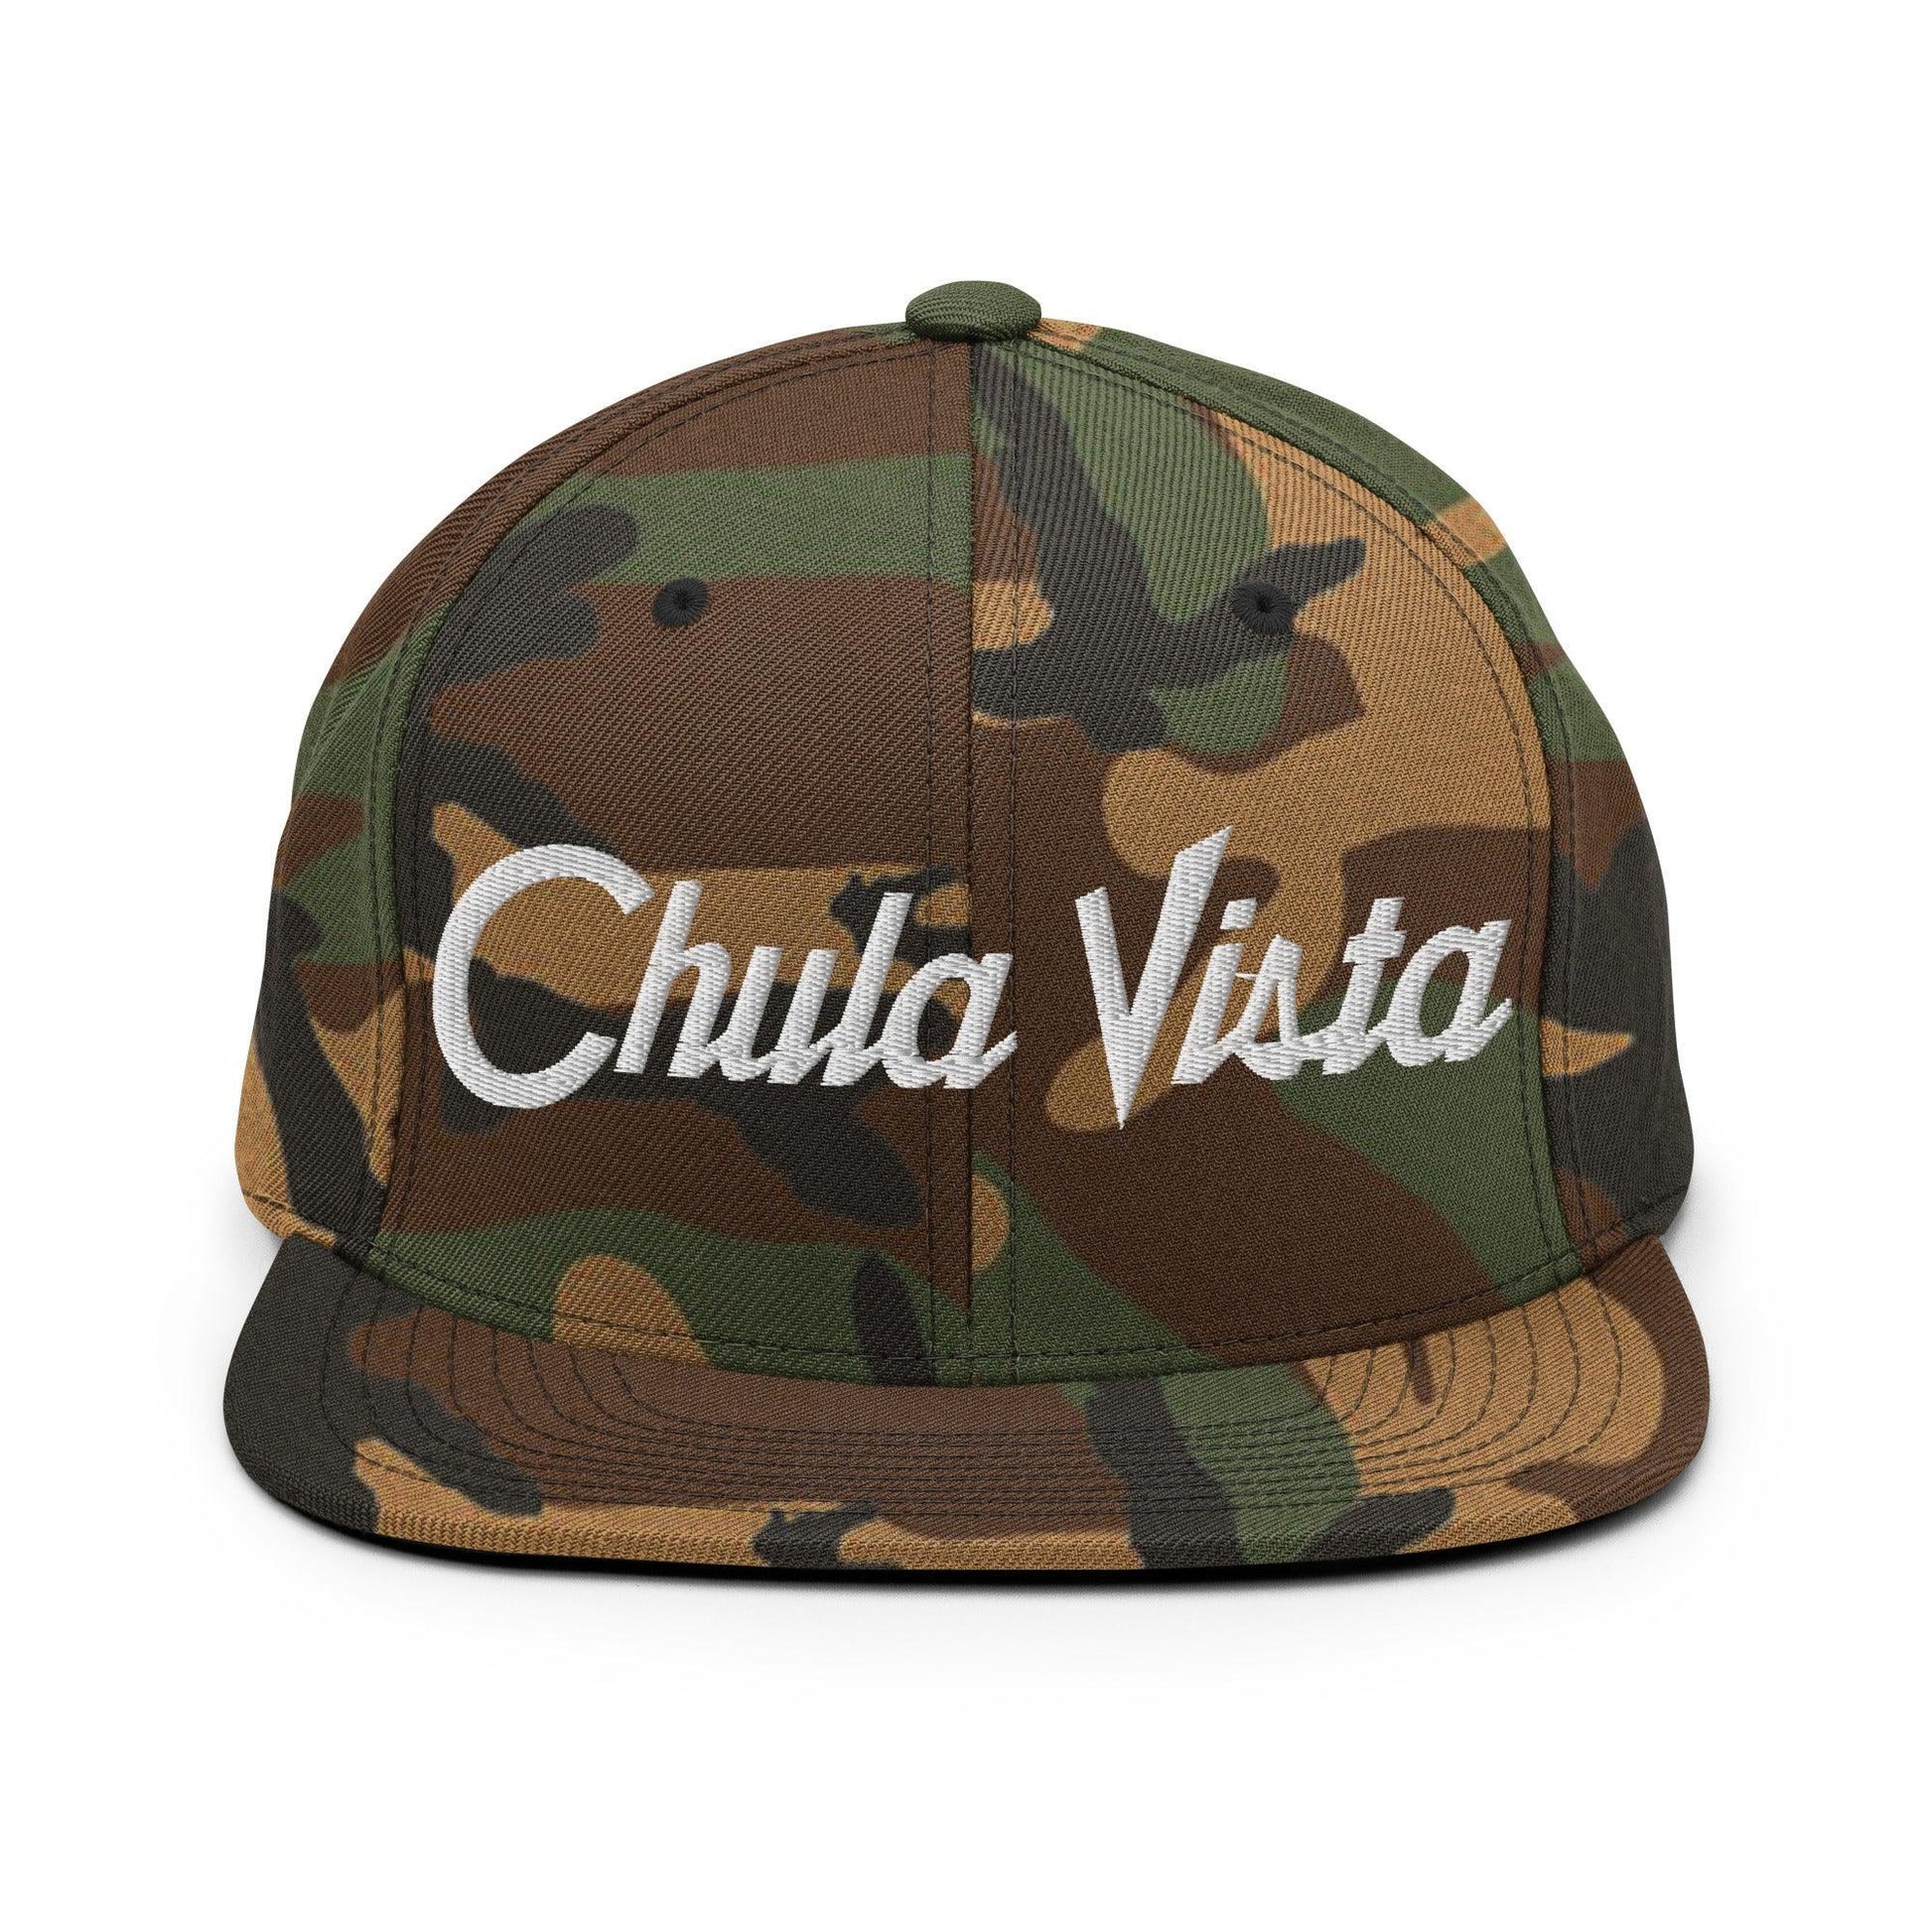 Chula Vista Script Snapback Hat Green Camo